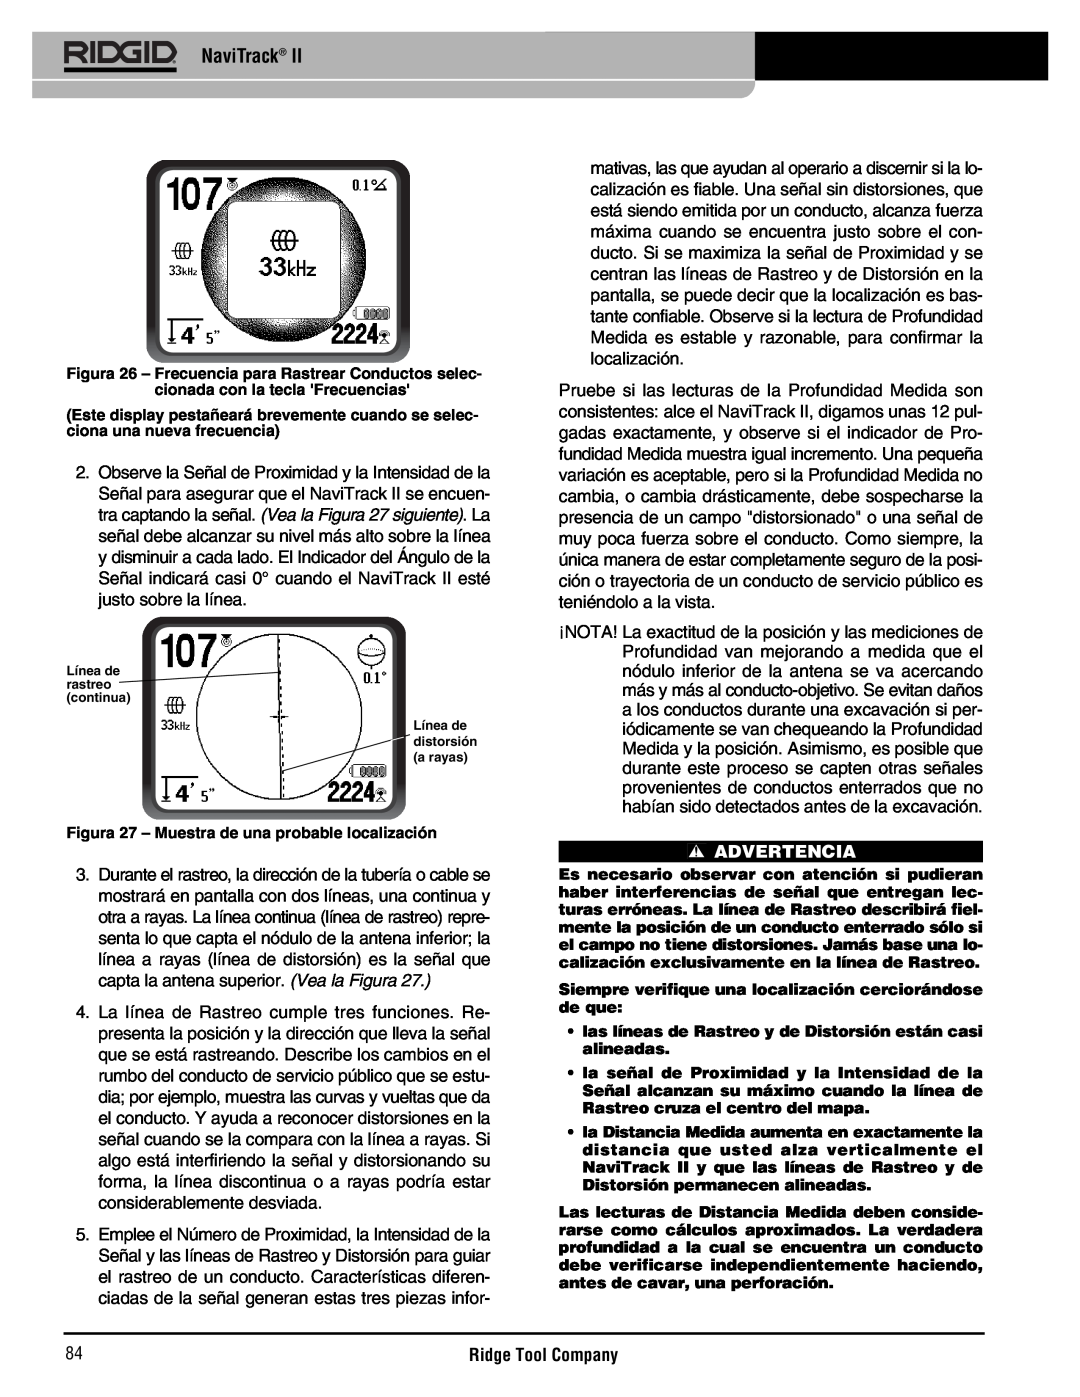 RIDGID Metal Detector manual NaviTrack, Advertencia, Figura 27 - Muestra de una probable localización 